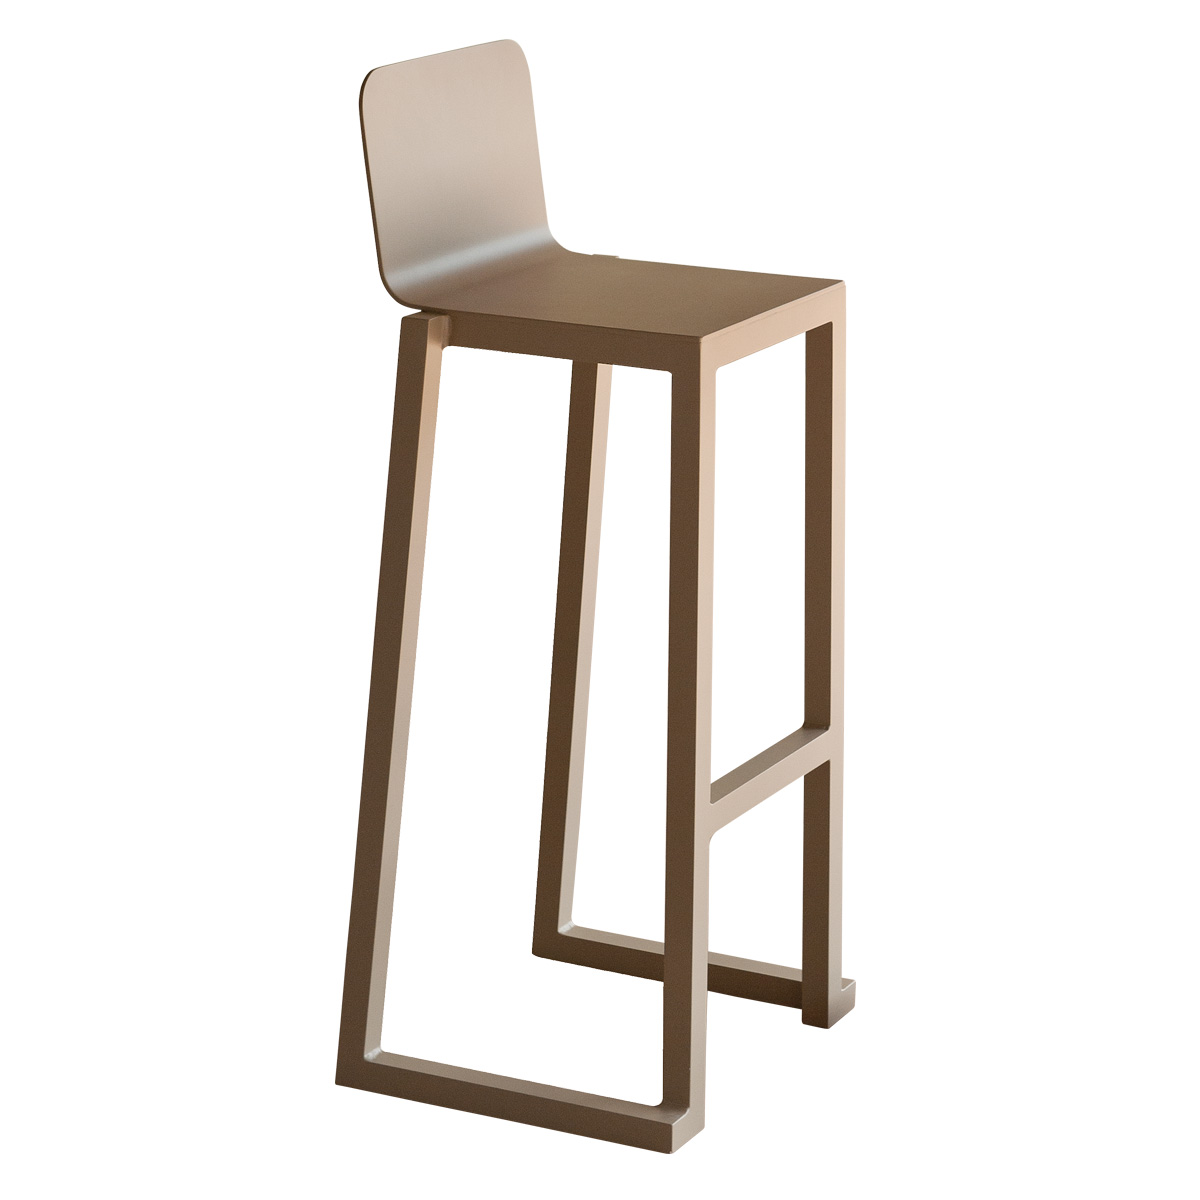 Barlono Chair